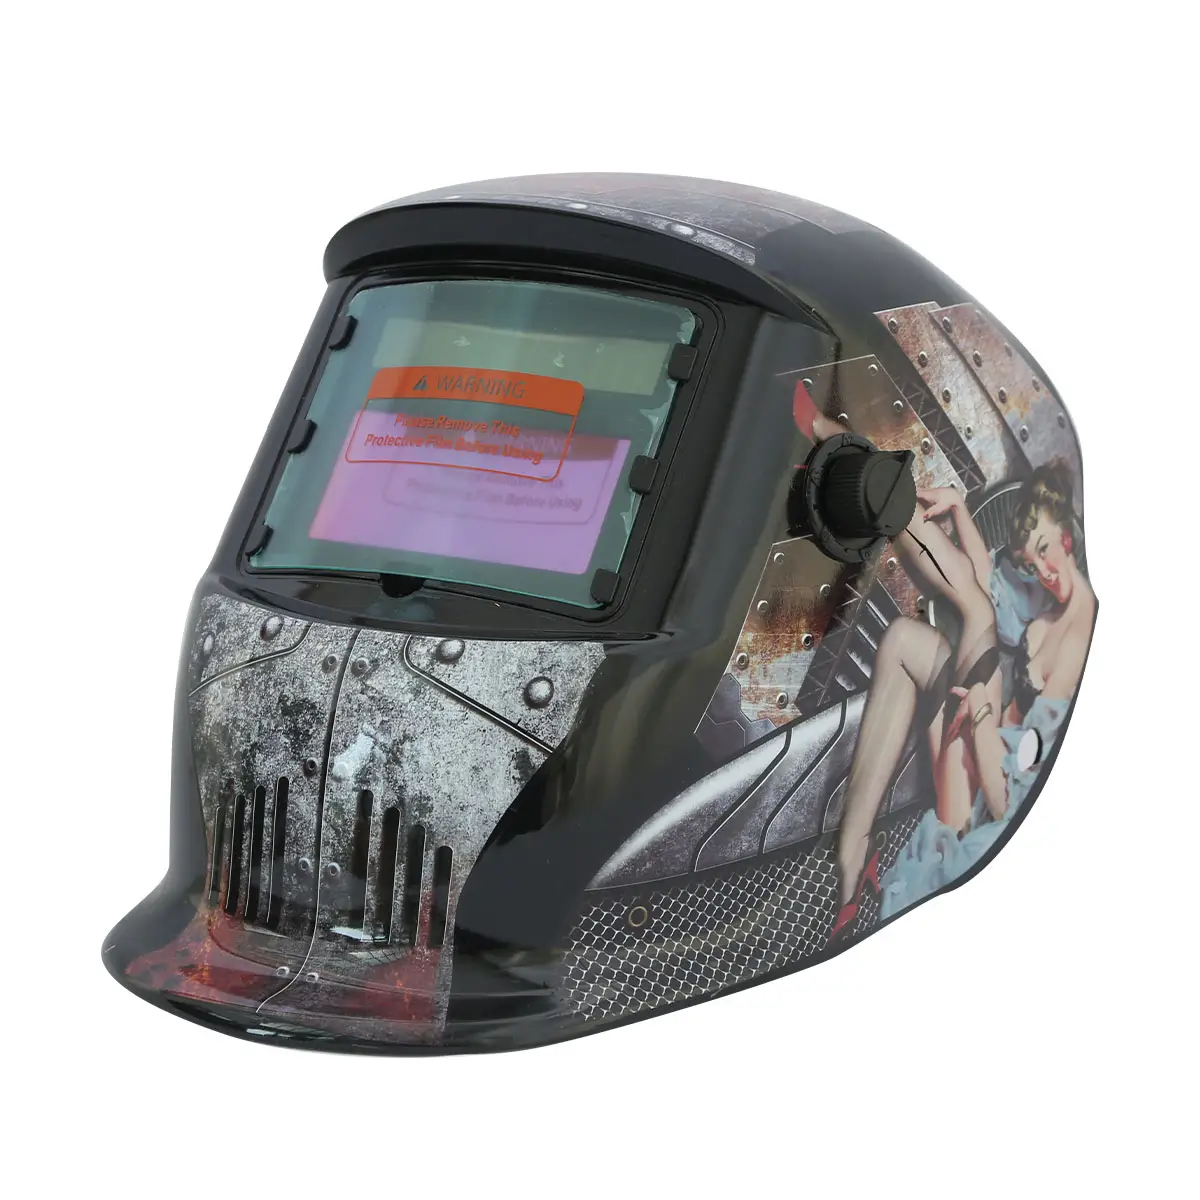 custom welding helmet decals en379 welding mask digital electronic tig automatic auto darkening safety welder helmet